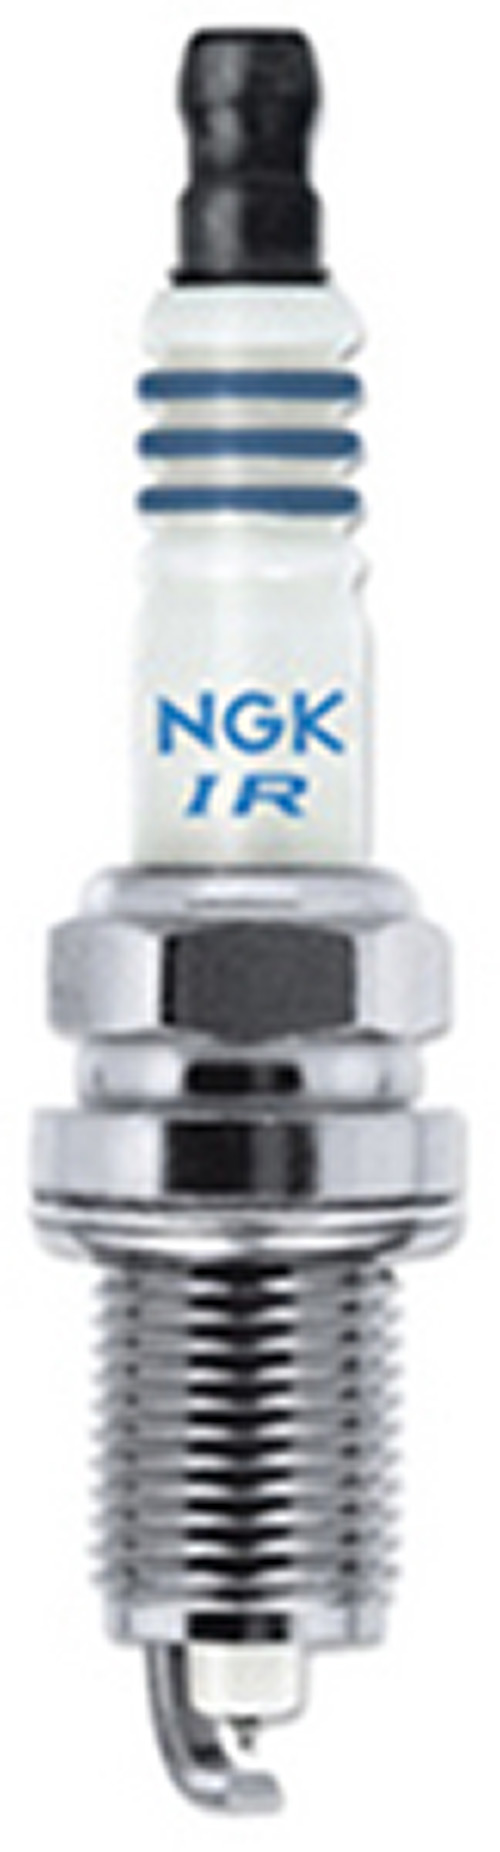 NGK 4462 Laser Iridium Spark Plug 